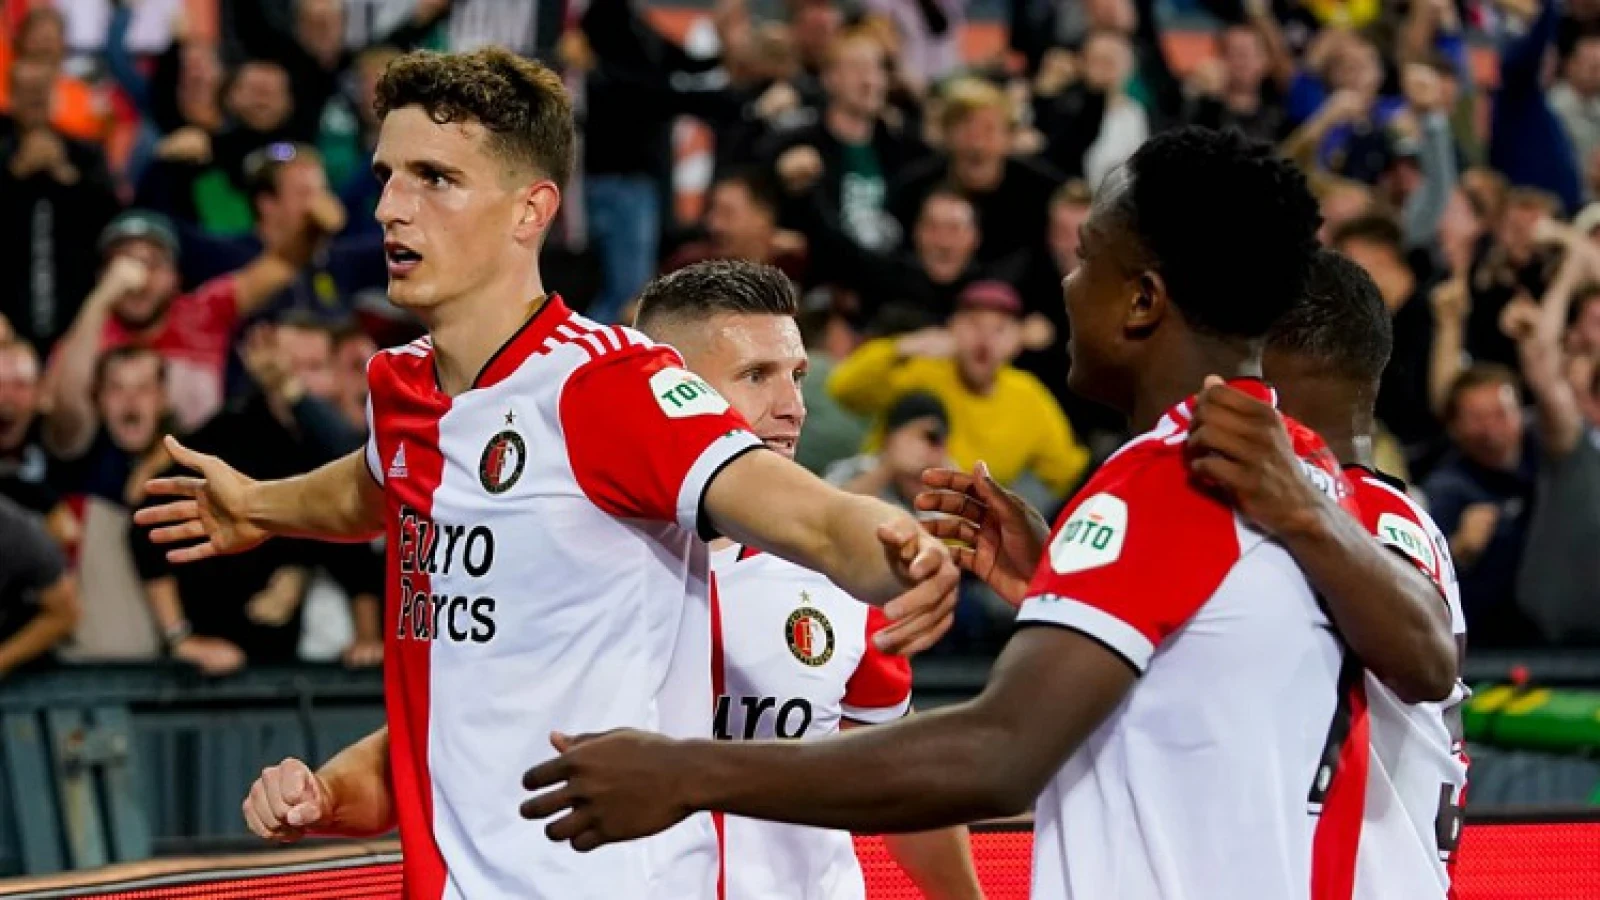 SAMENVATTING | Feyenoord - NEC 5-3